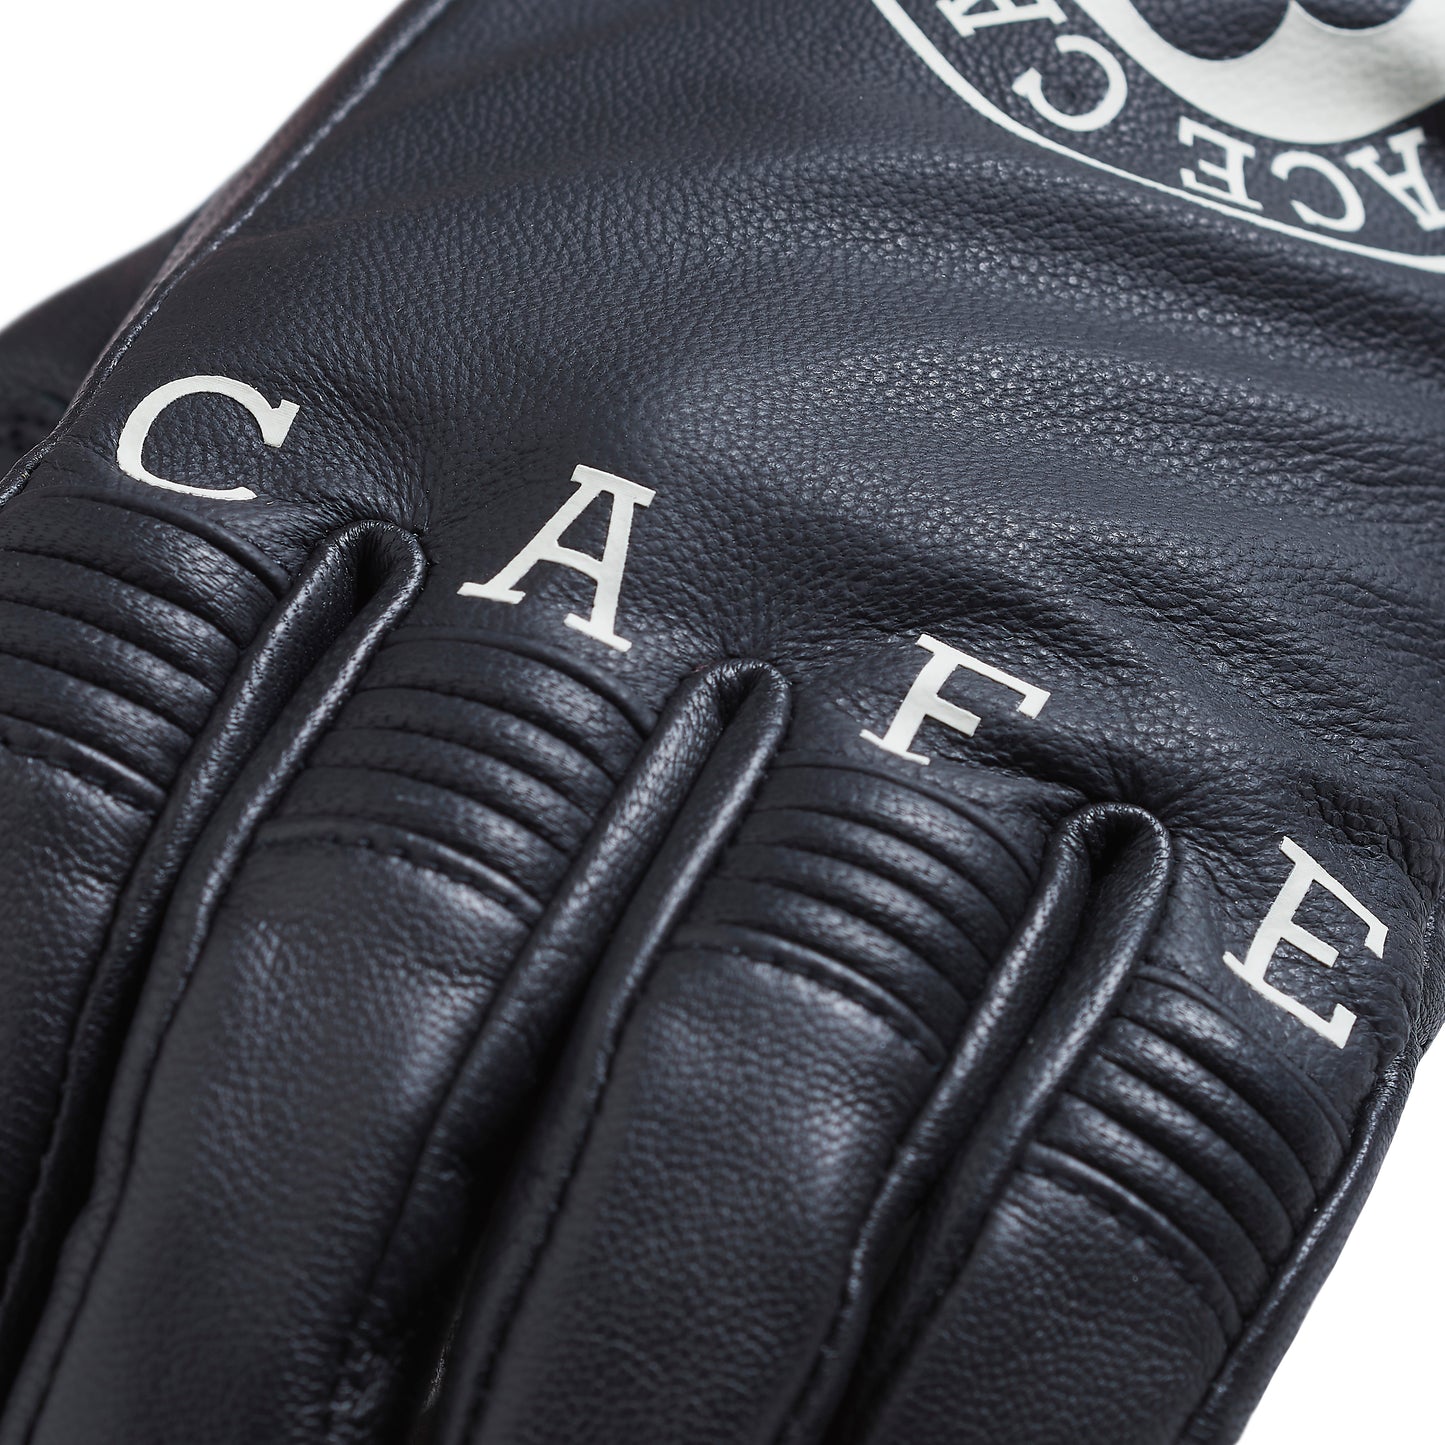 Triumph Ace Café Motorcycle Leather Gloves